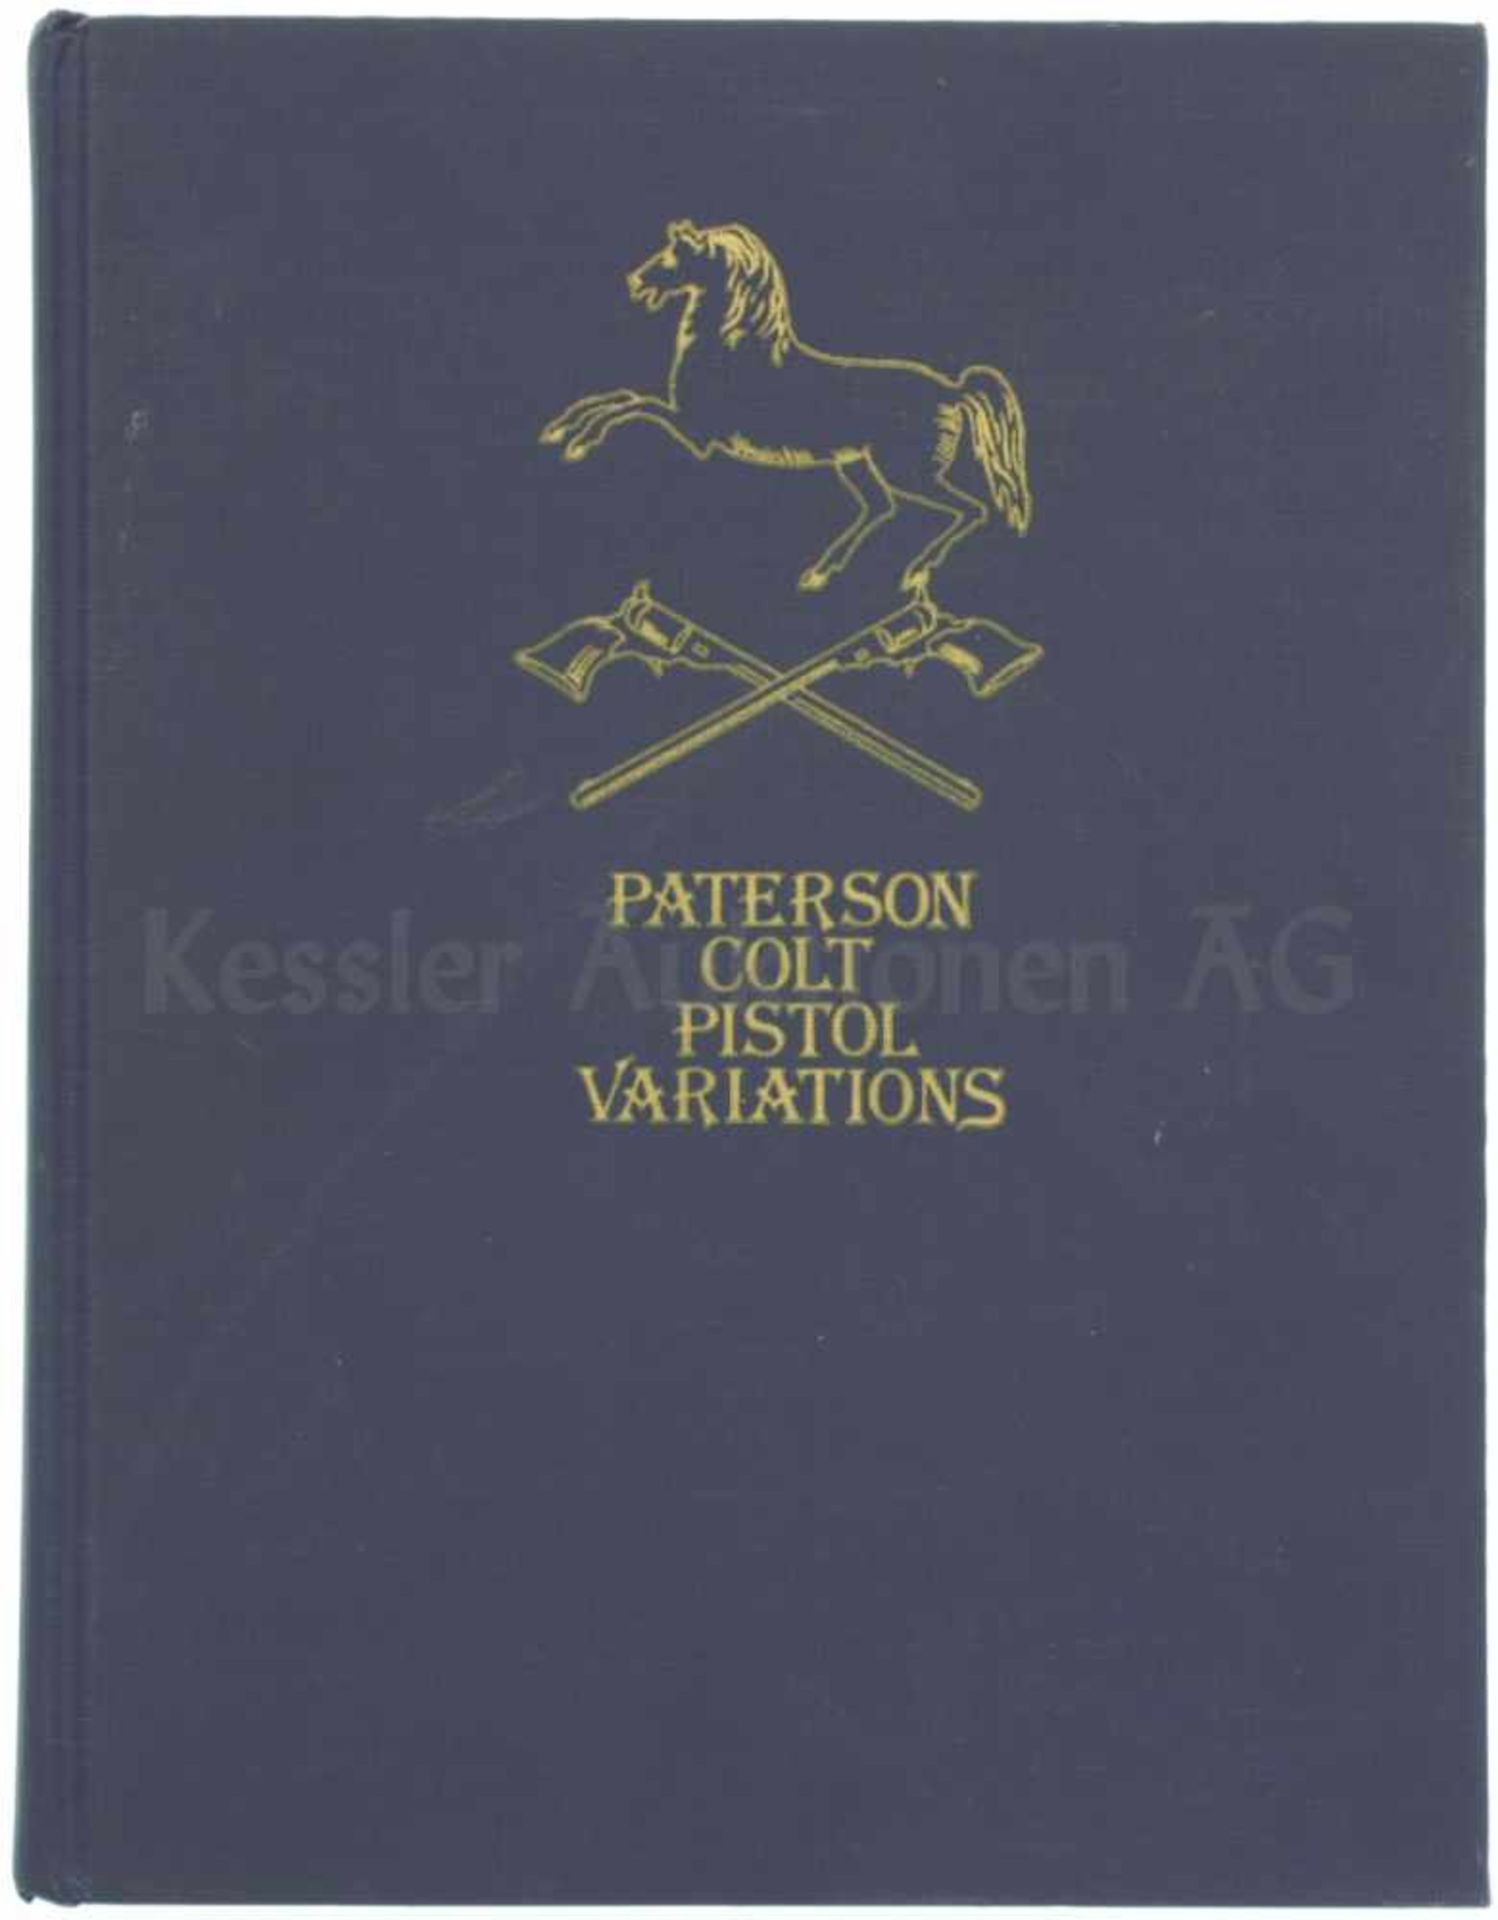 Paterson Colt Pistol Variatons Autoren Philip R. Phillips und R.L. Wilson, 1979, 232 Seiten, in